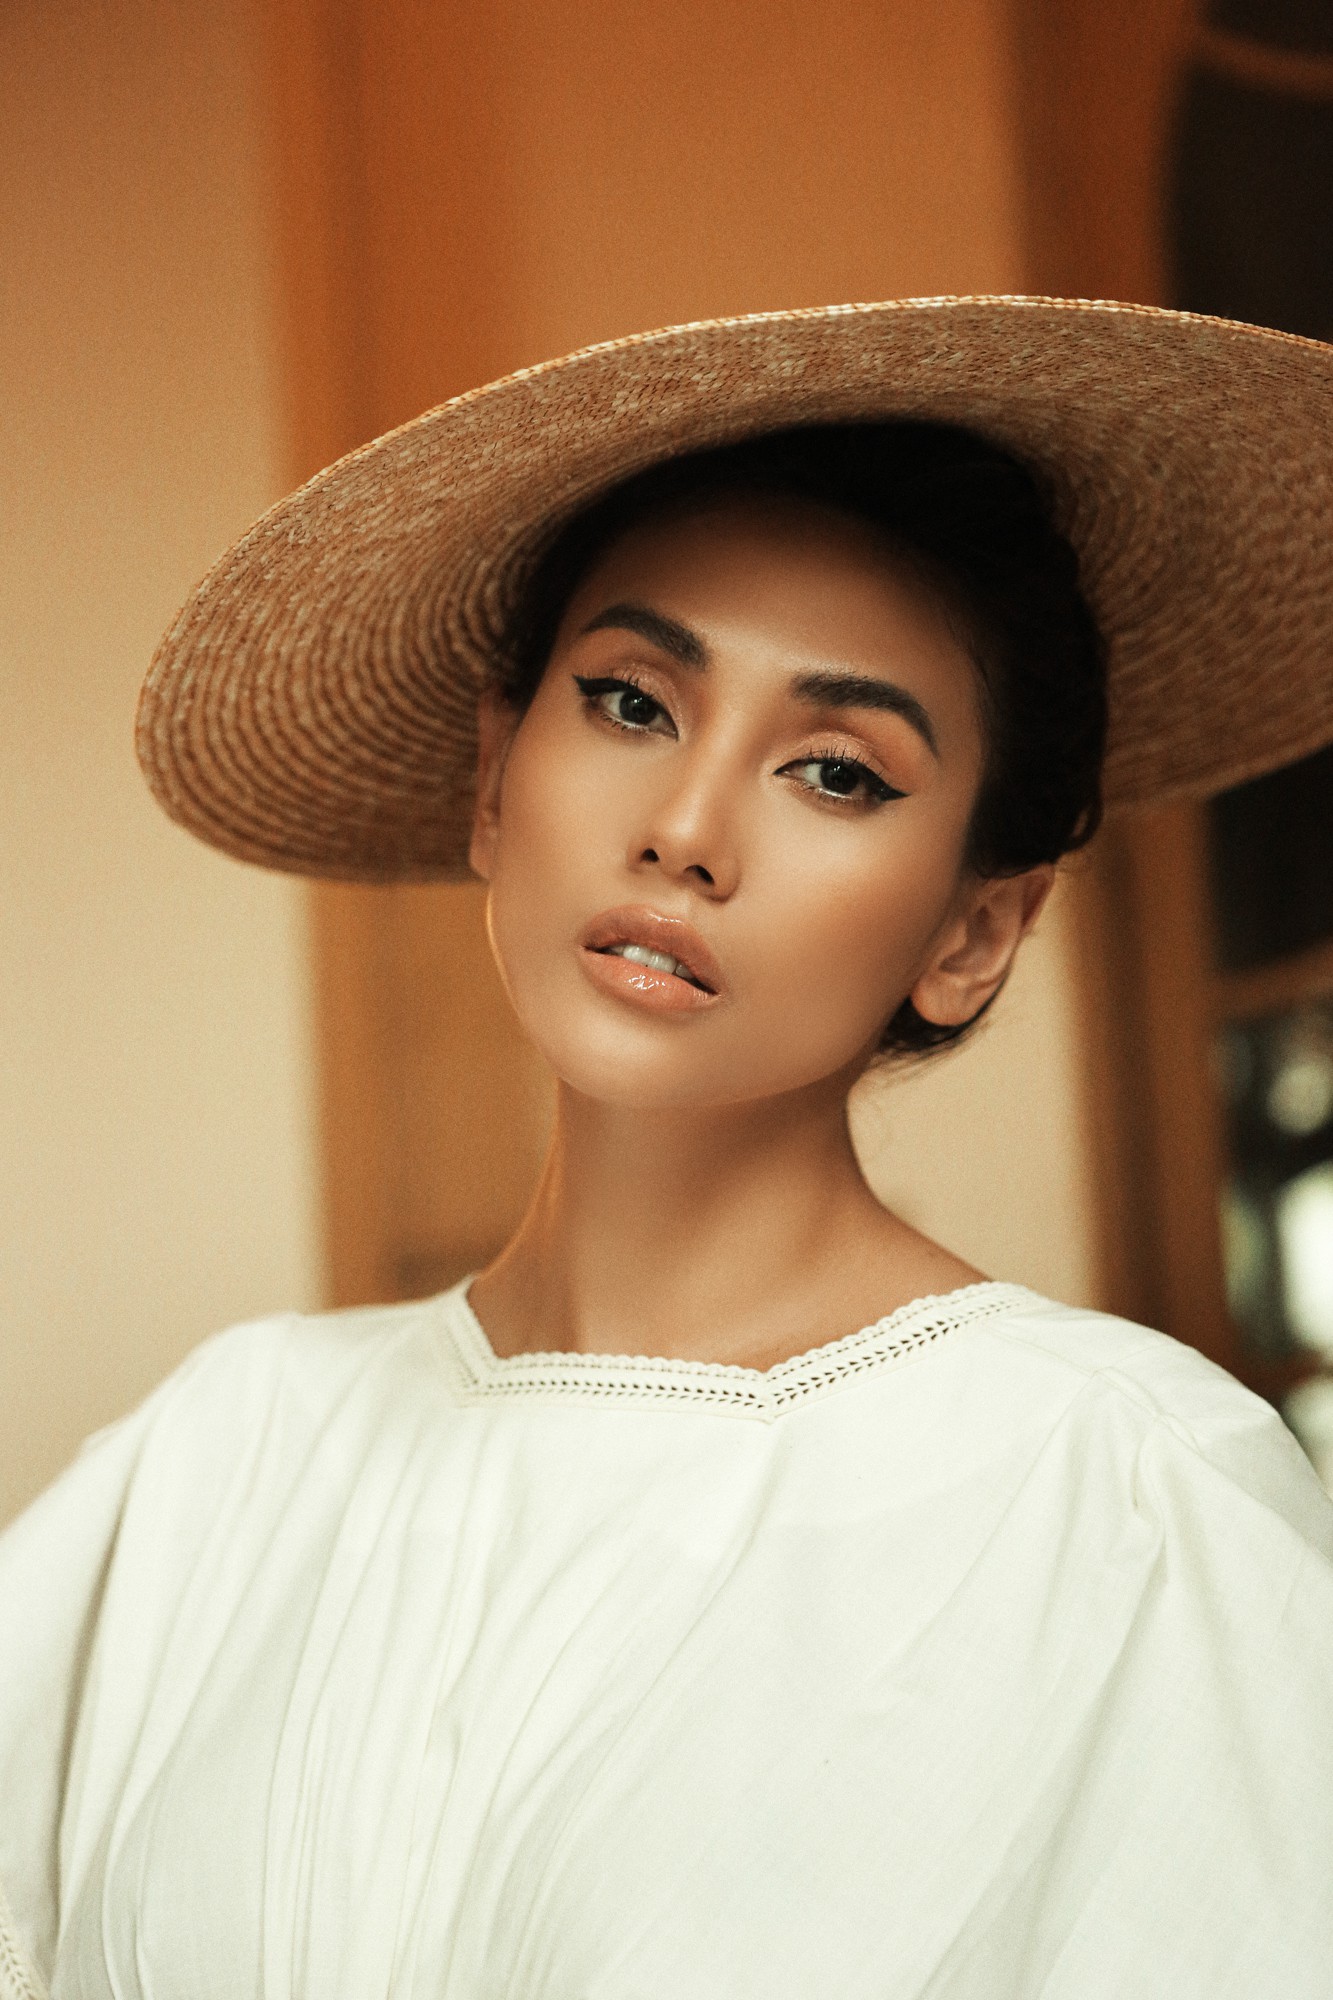 Sau Minh Tú, siêu mẫu Võ Hoàng Yến là giám khảo tiếp theo của Miss Supranational Vietnam 2018 - Ảnh 2.